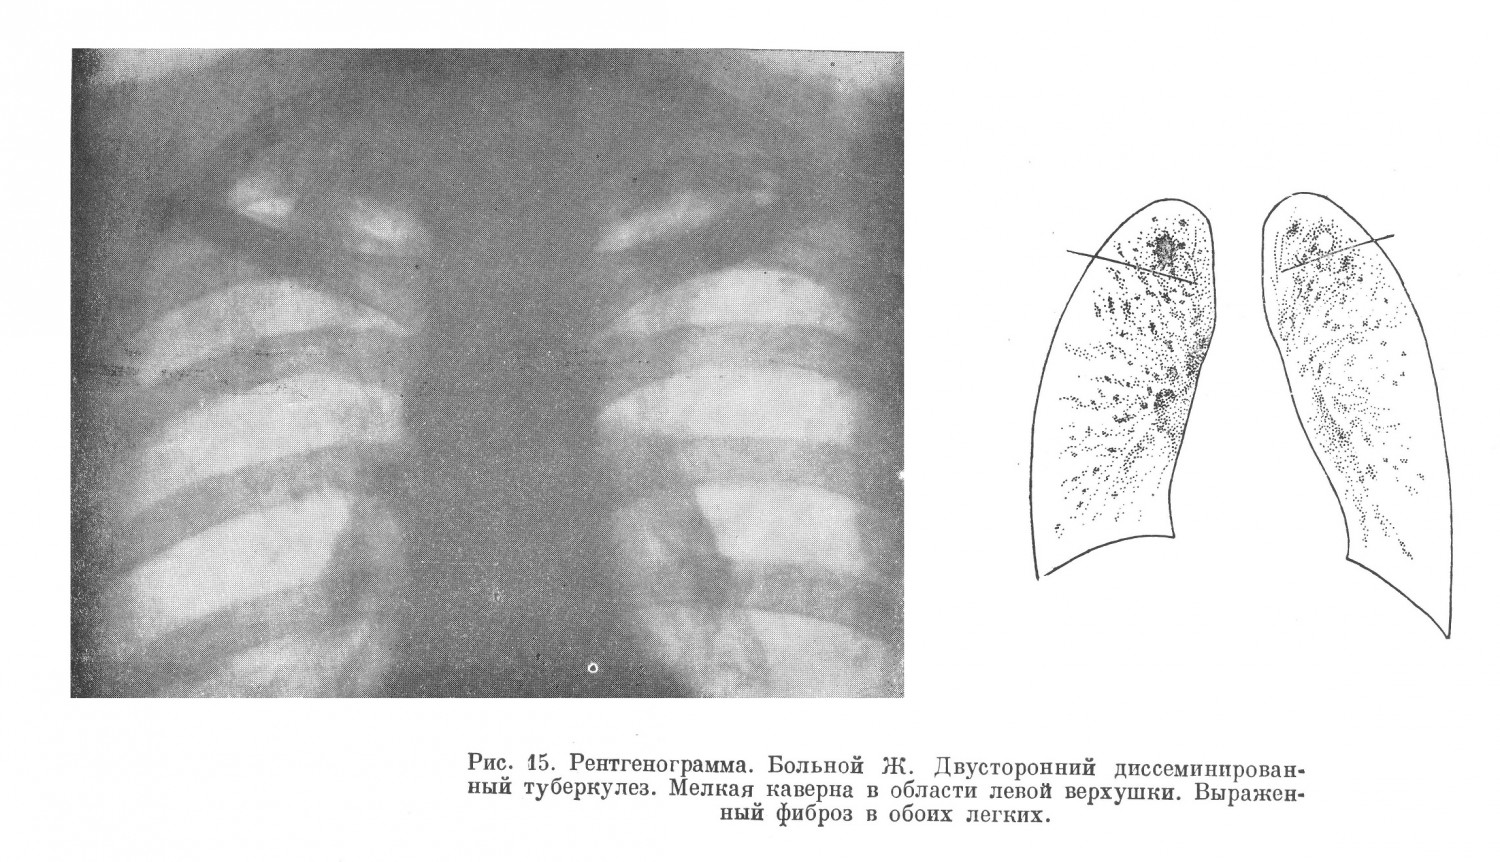 При рентгеноскопии обнаружен двусторонний диссеминированный туберкулезный процесс